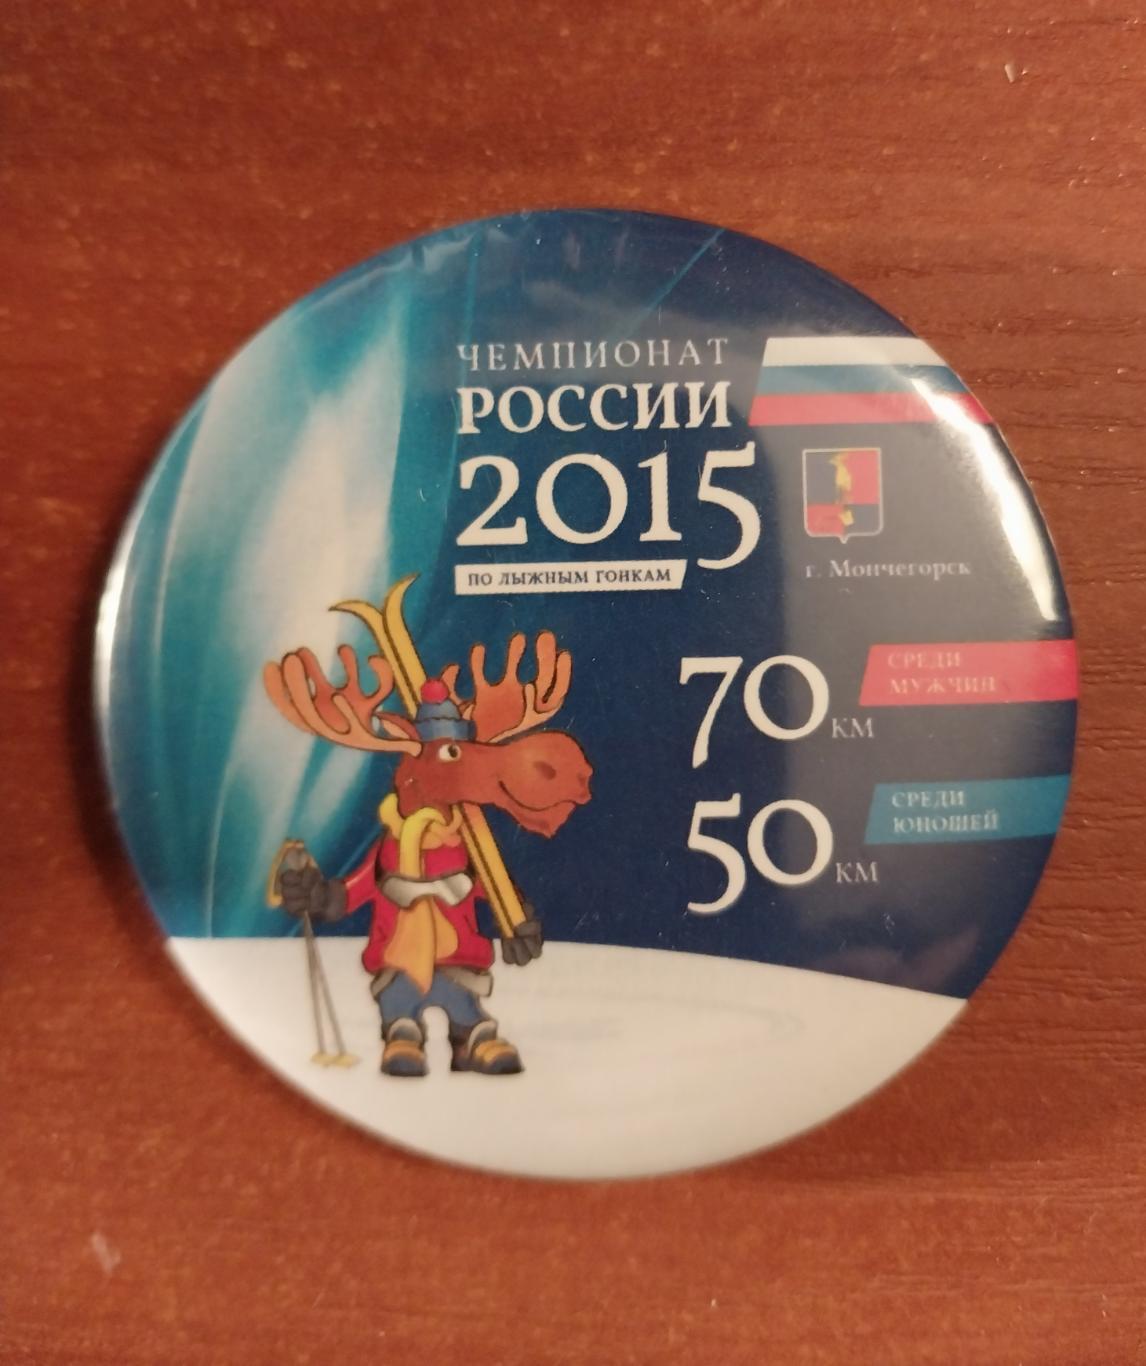 Лыжные гонки. Чемпионат России 2015. Мончегорск. 70 км